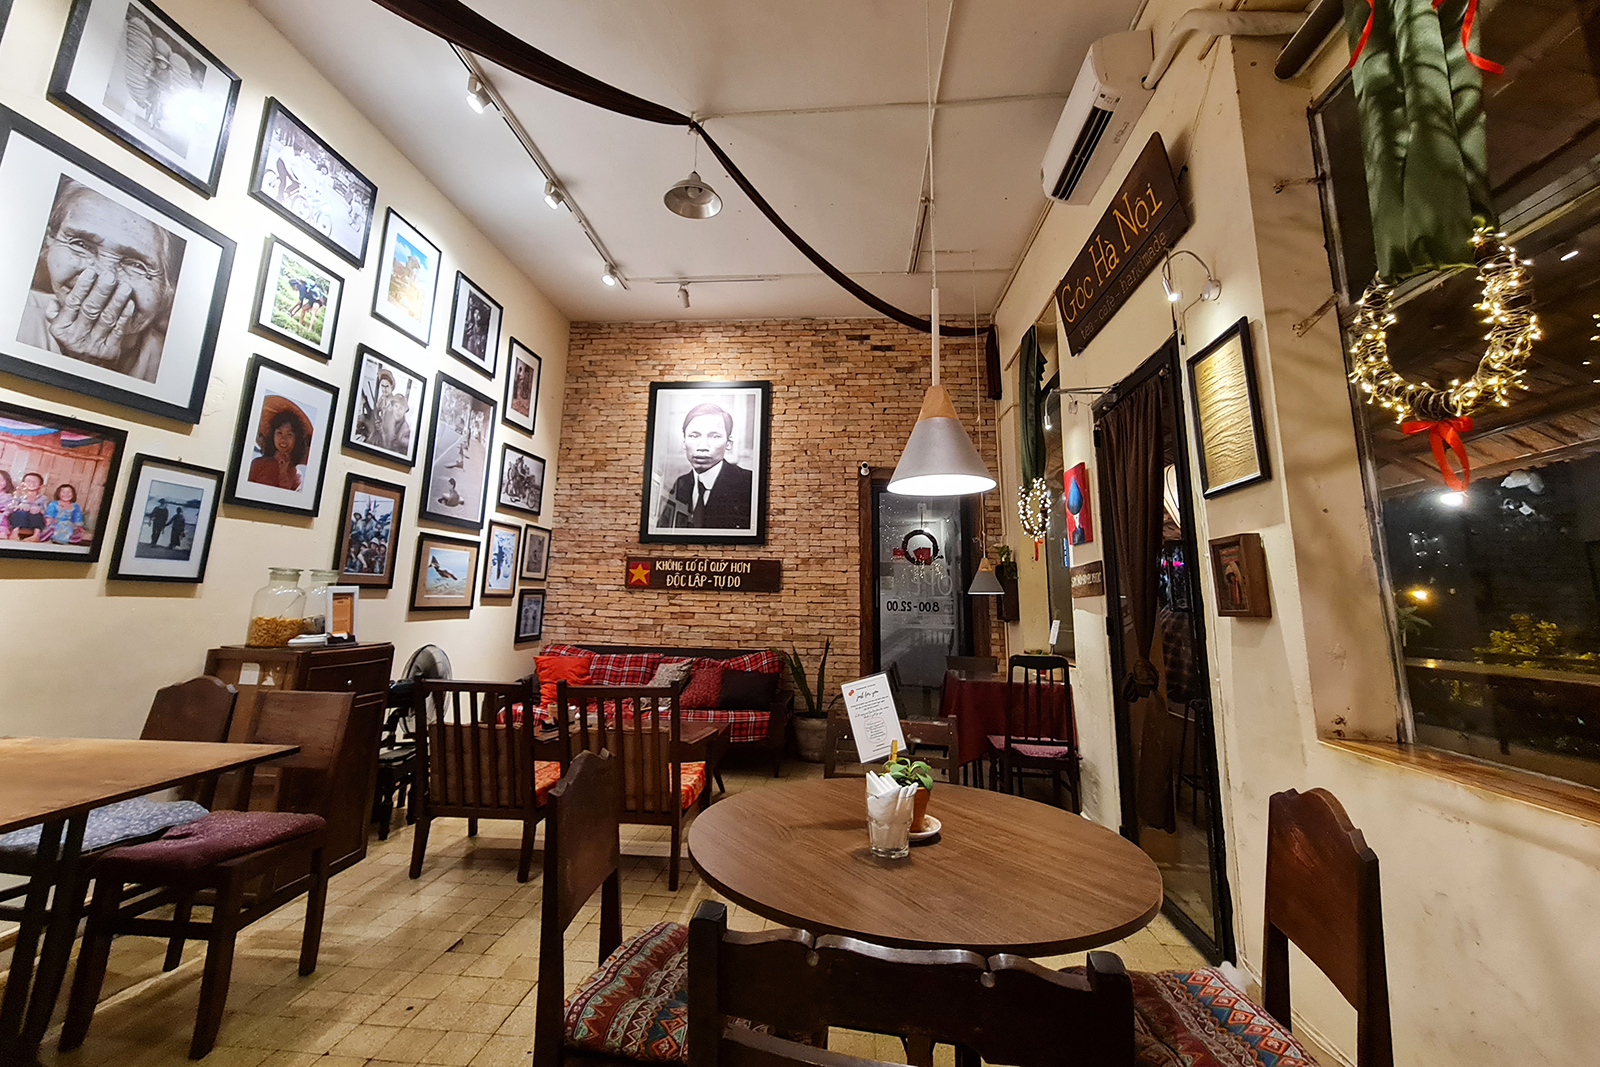 thi công thiết kế quán cafe vintage 30m2 chỉ 100 triệu ở Đà Nẵng